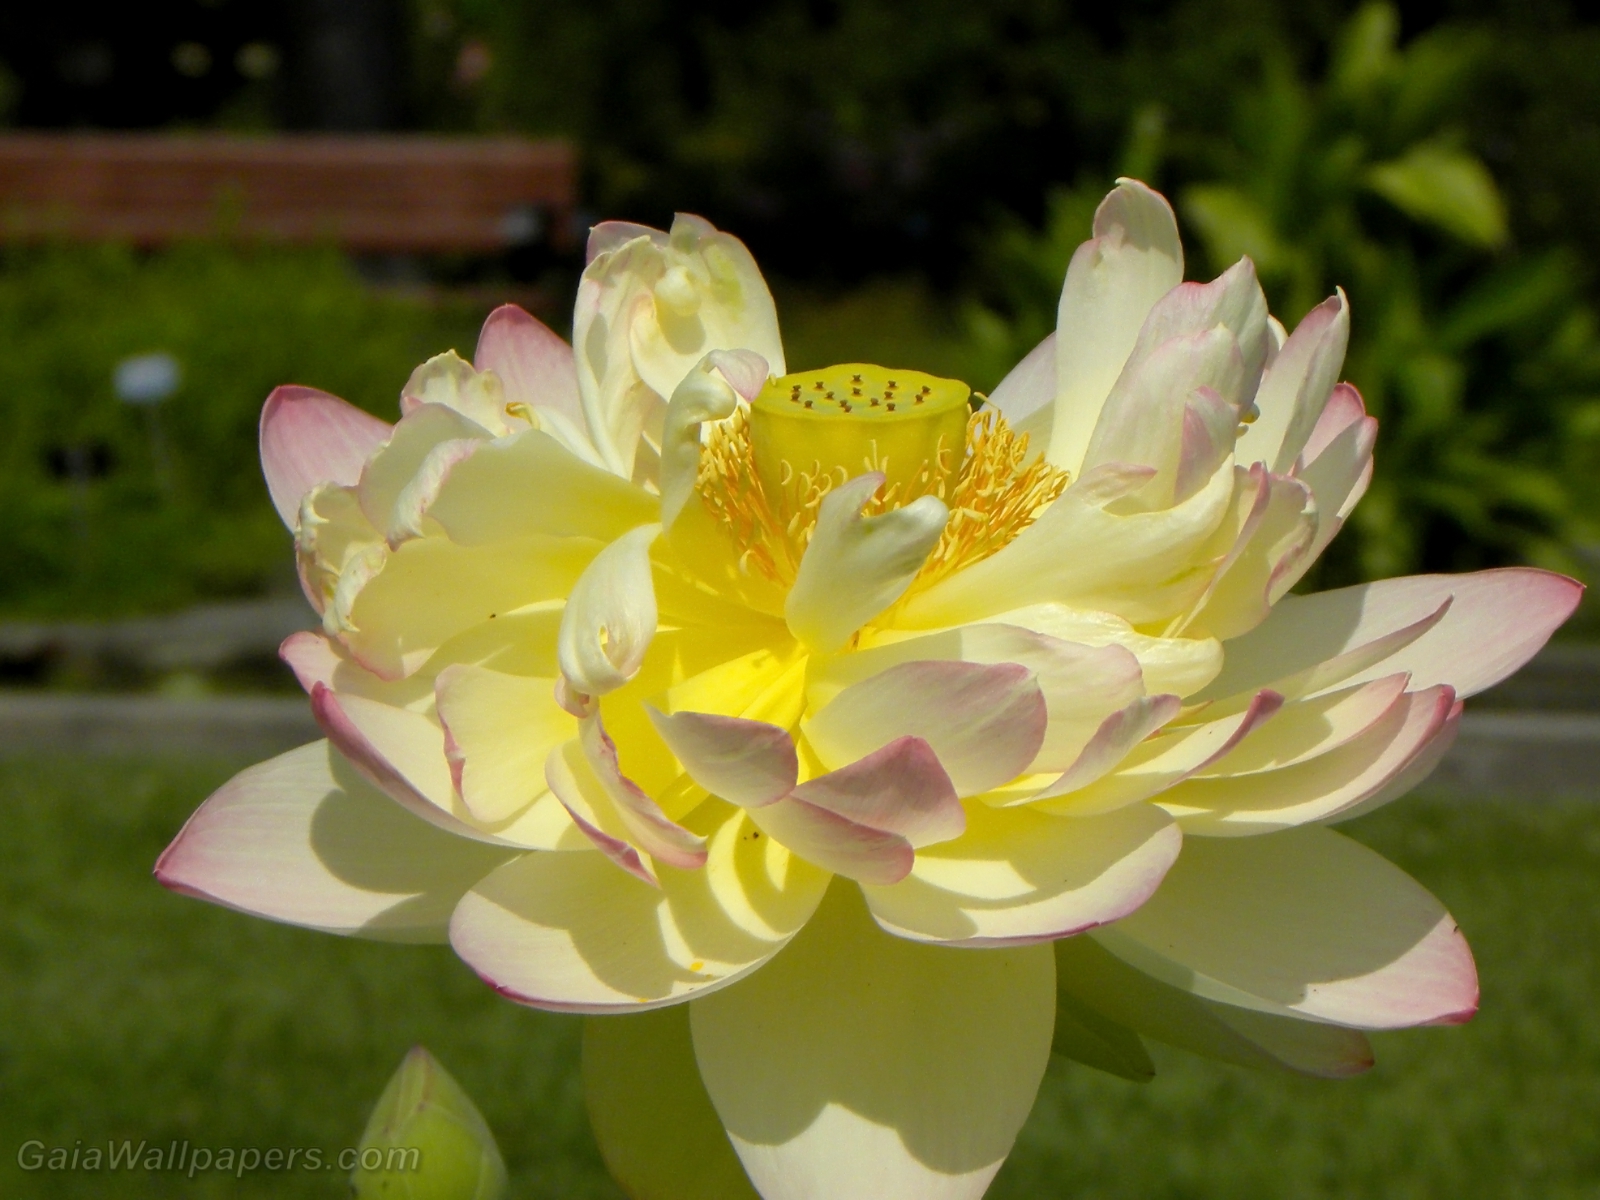 Lotus flower in all its beauty - Free desktop wallpapers